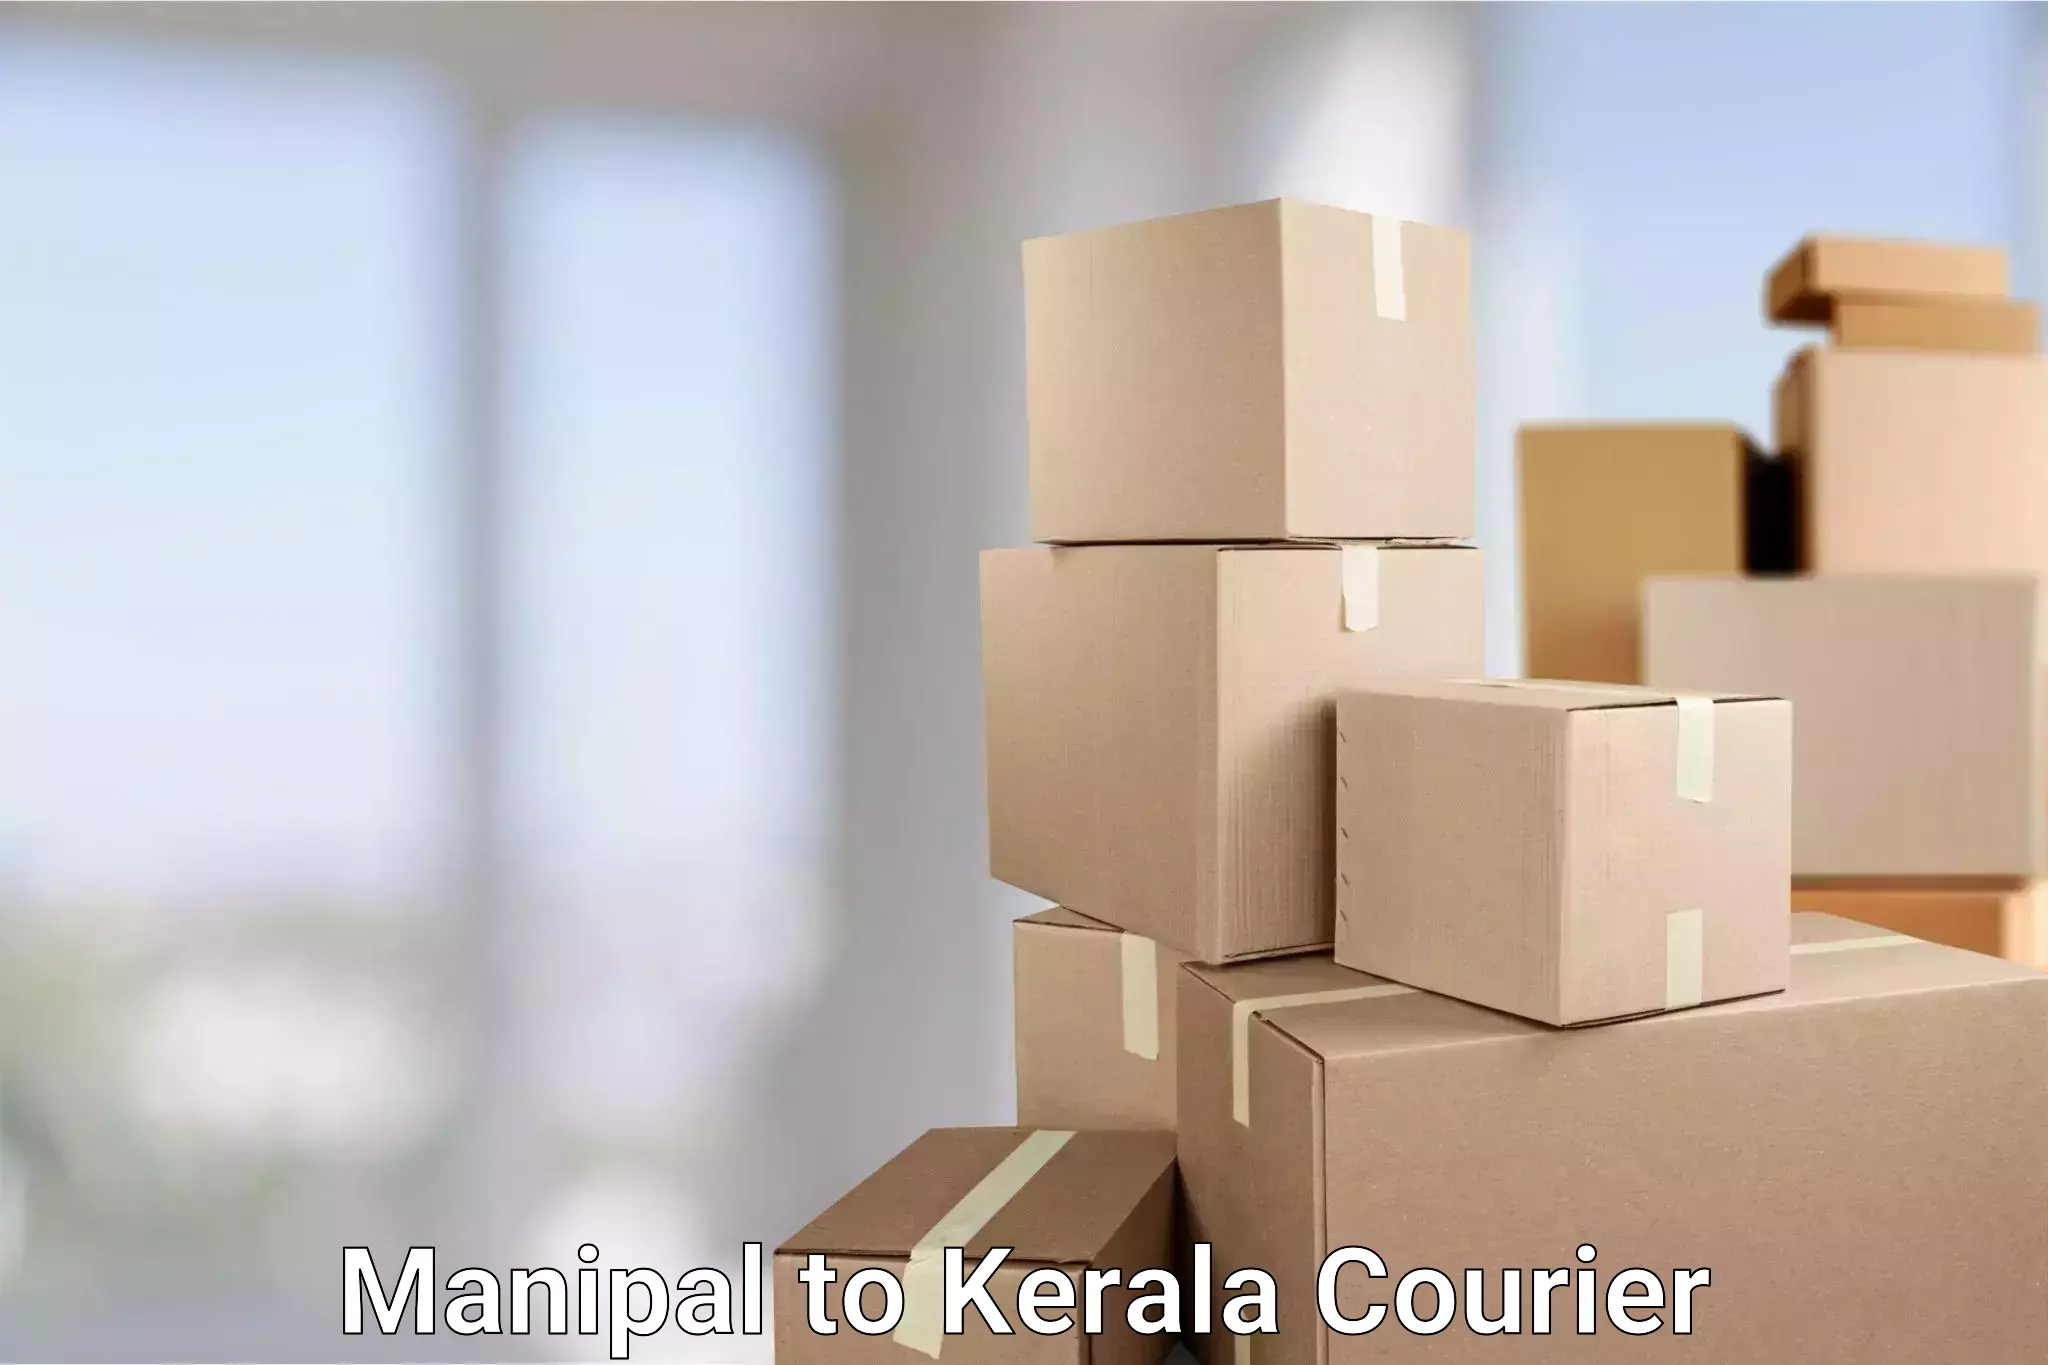 Global logistics network Manipal to Tiruvalla